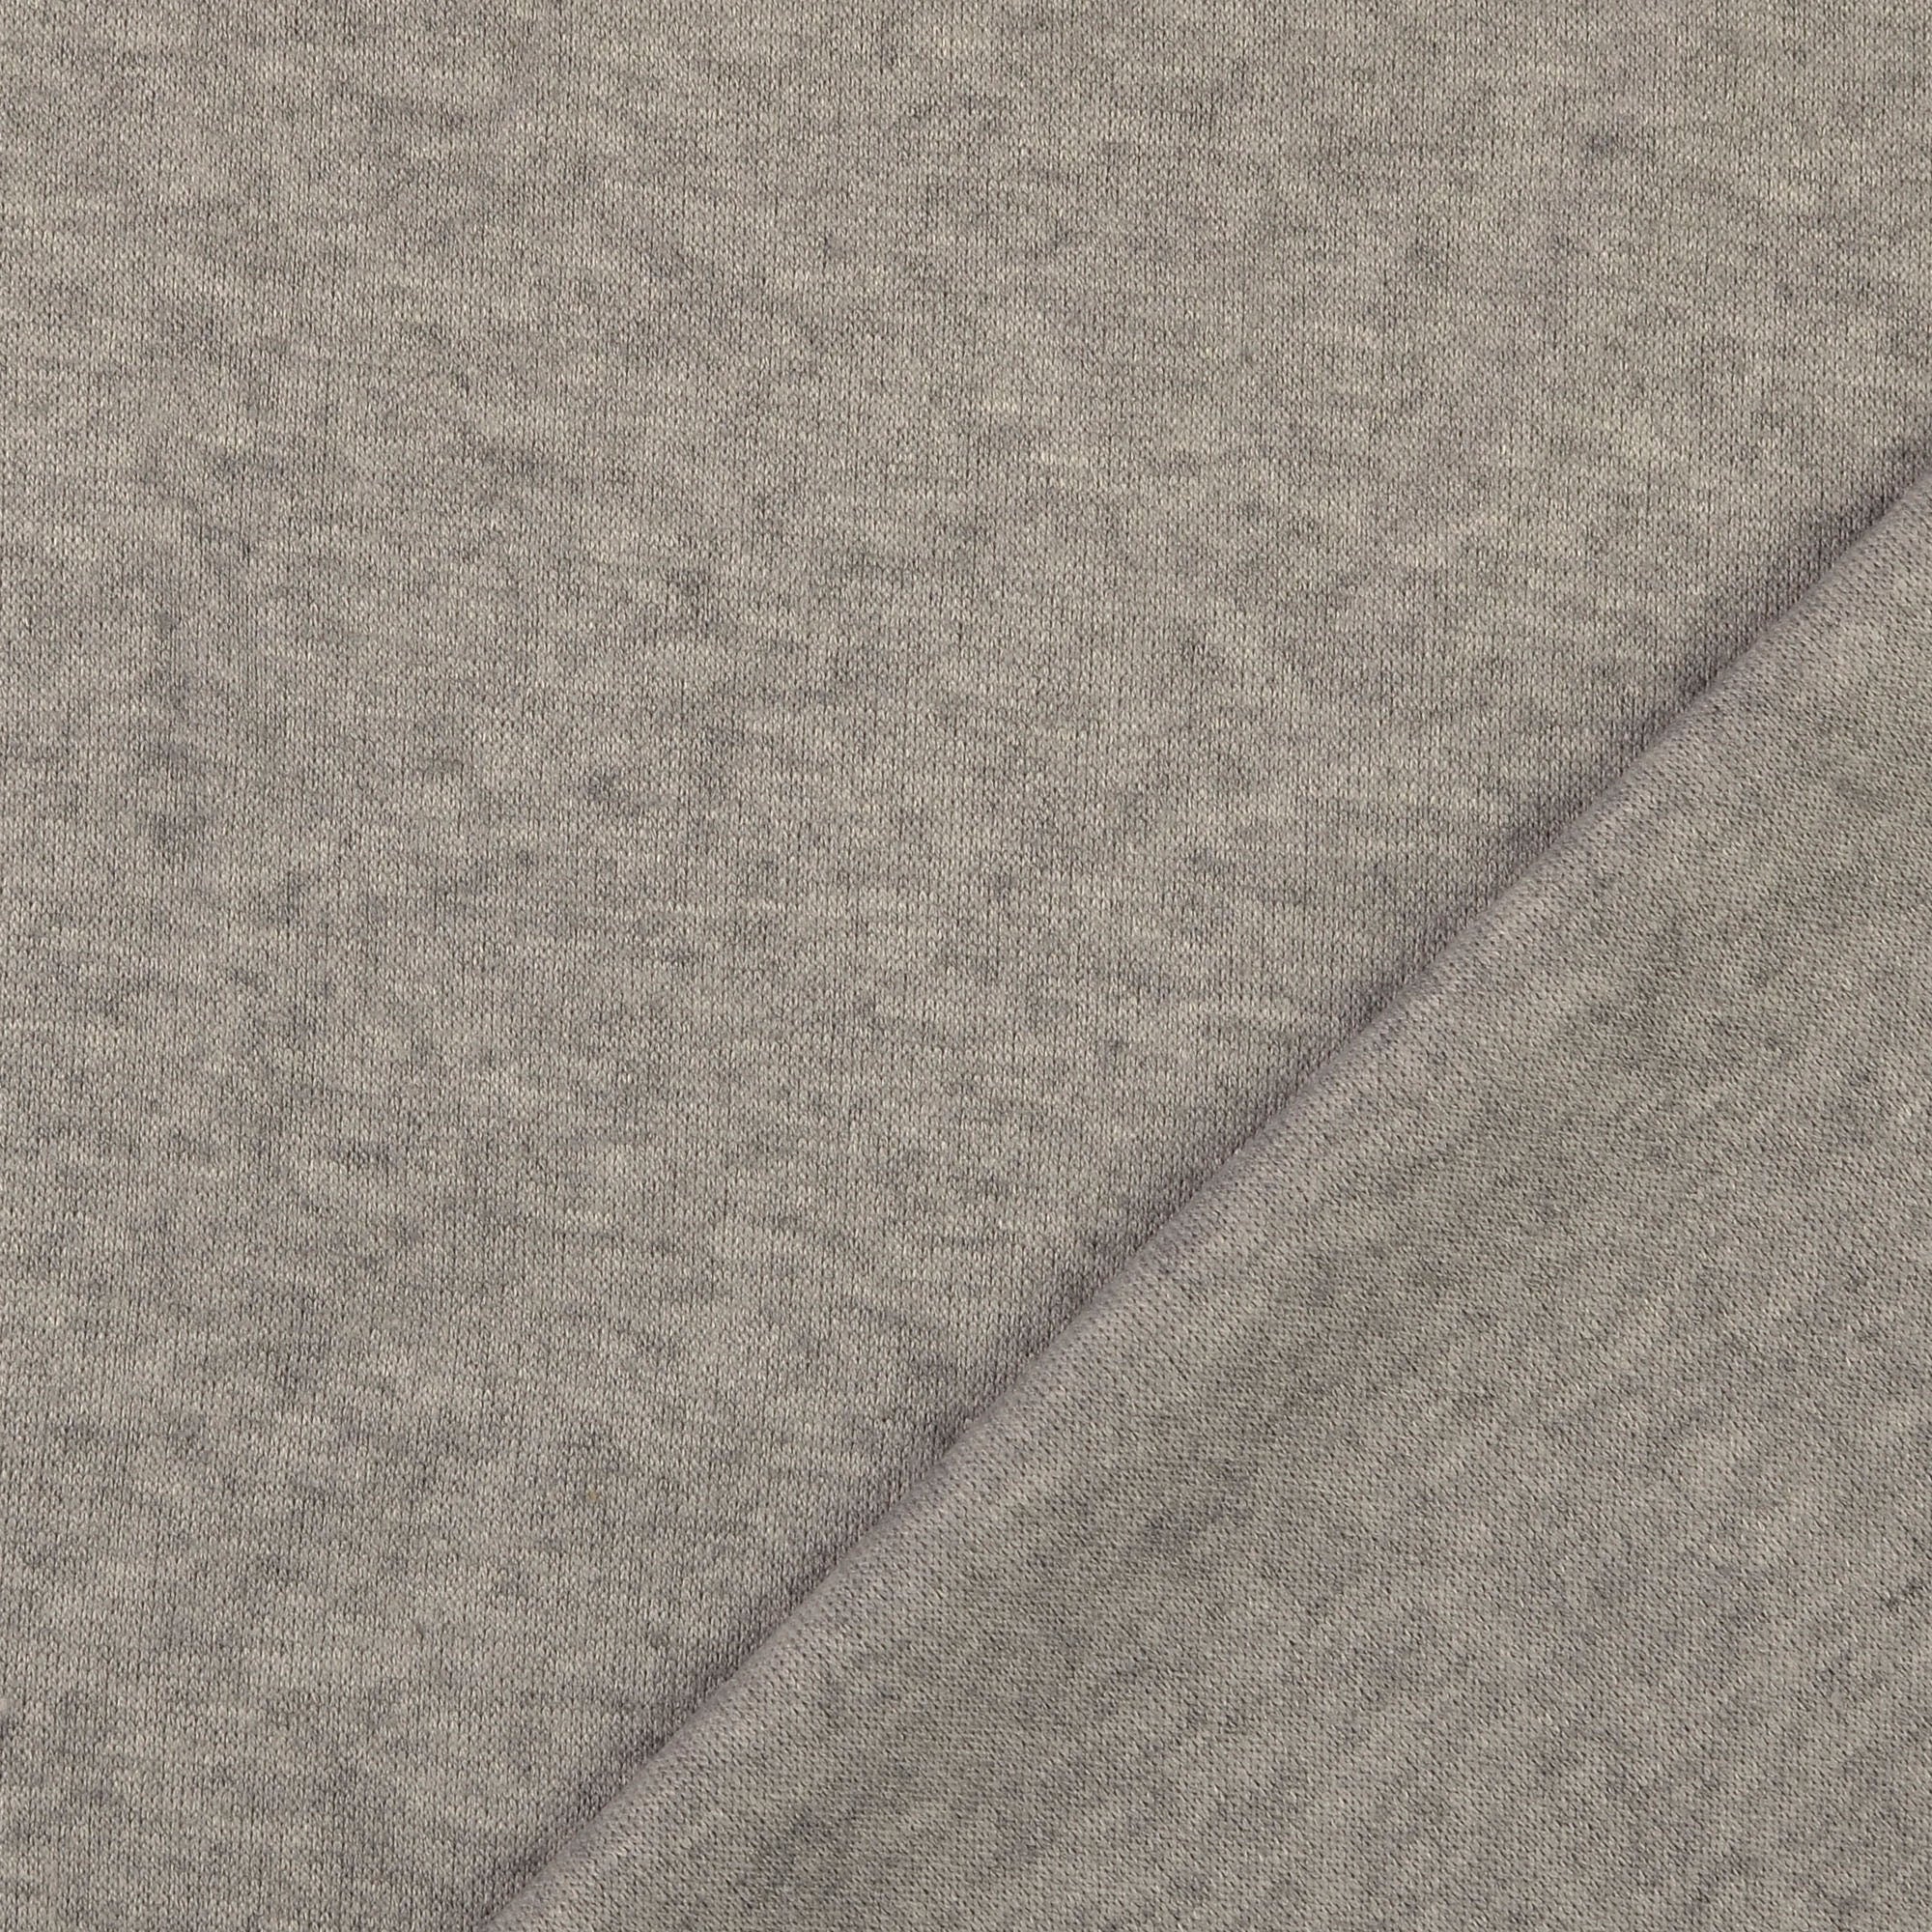 REMNANT 0.66 Metre - Snug Viscose Blend Sweater Knit in Grey Melange